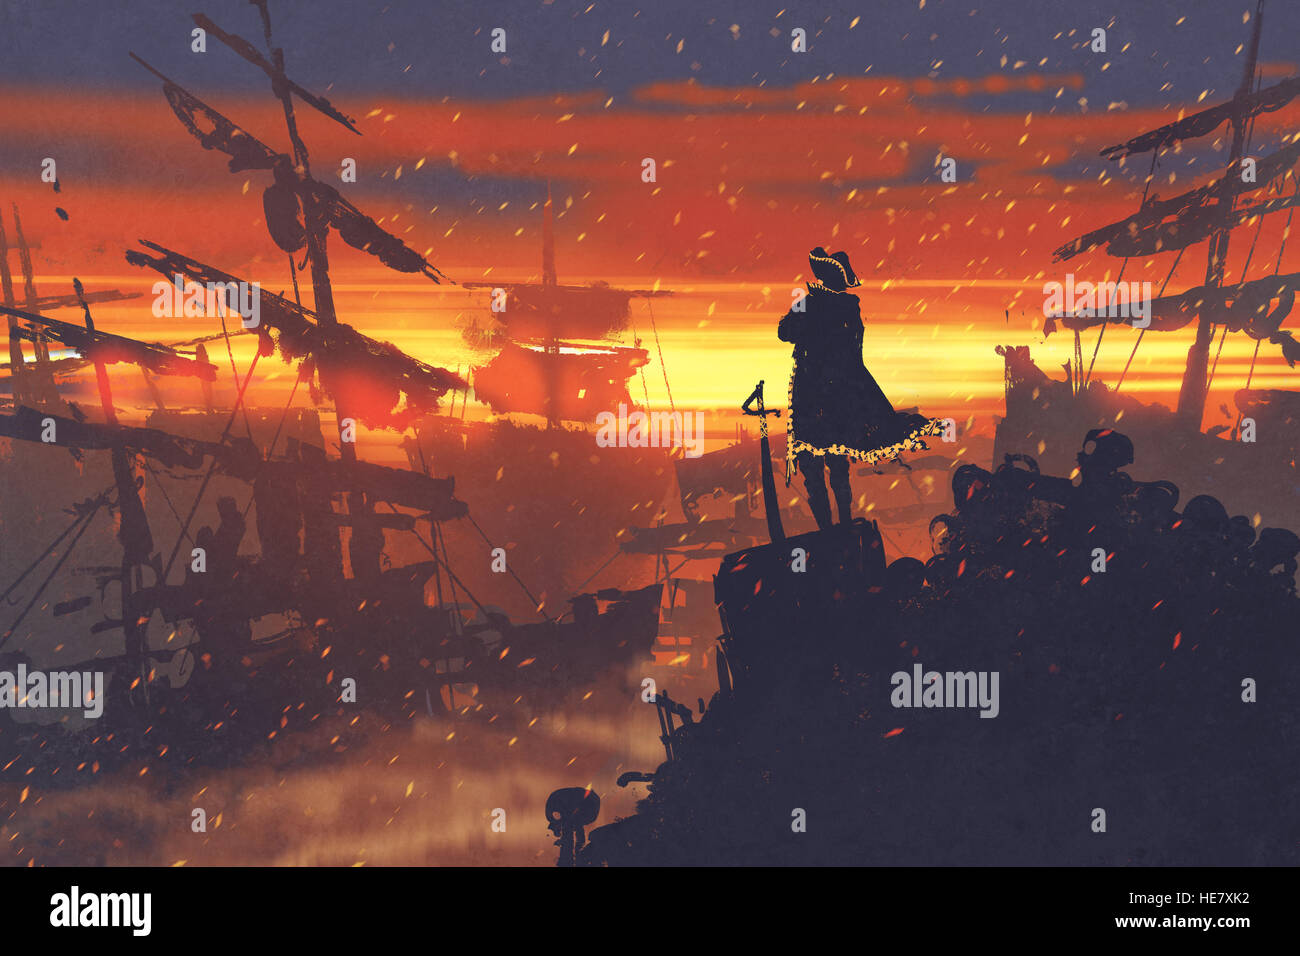 Debout sur pirate treasure pile contre les navires en ruine au coucher du soleil,illustration peinture Banque D'Images